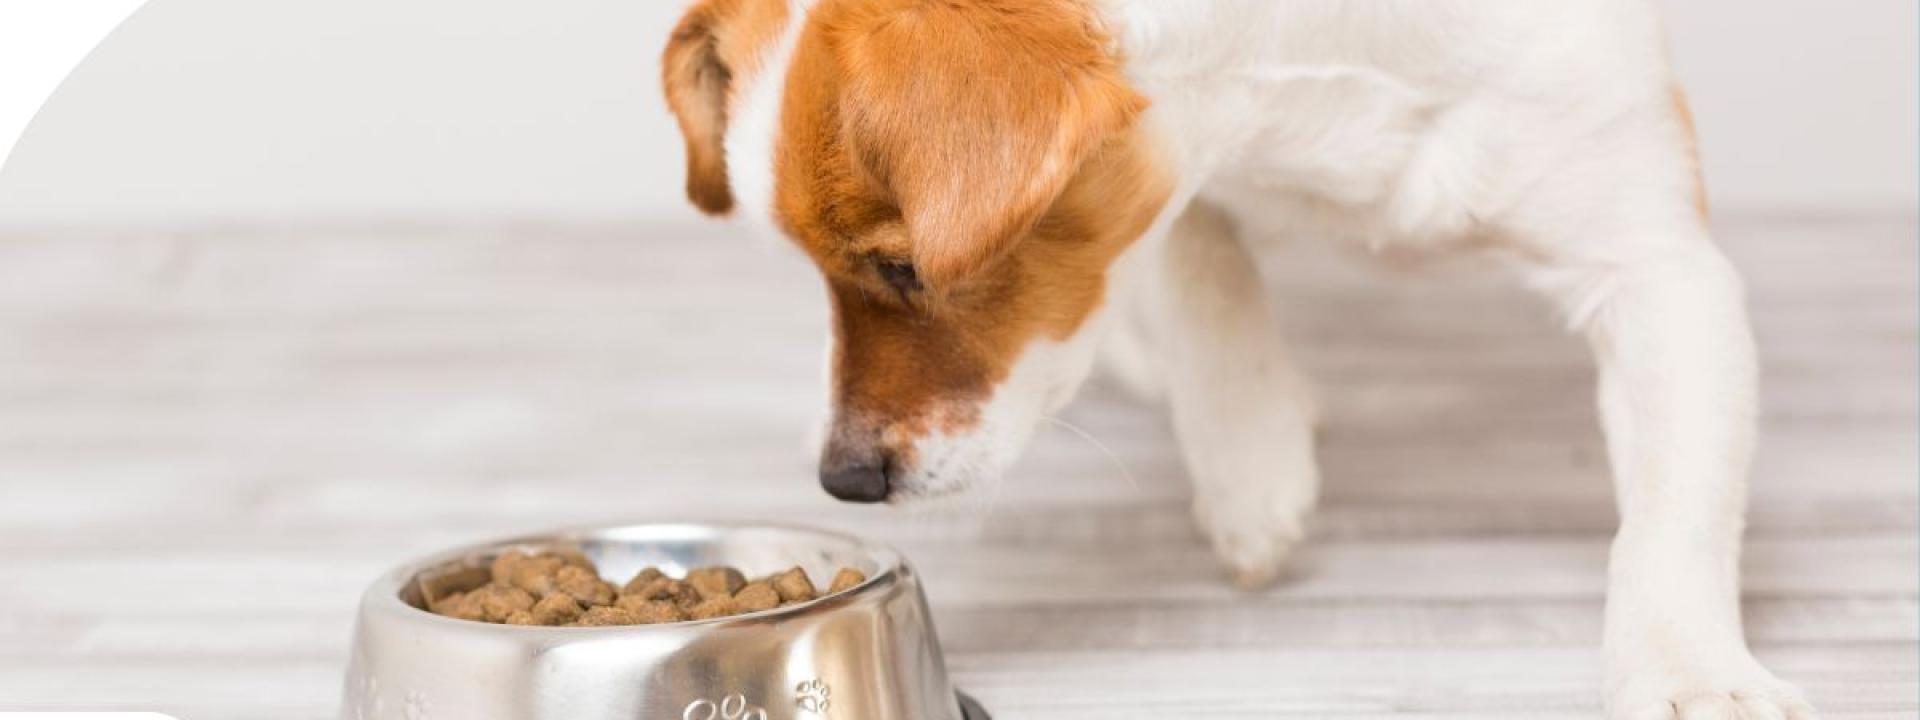 Dog smelling food